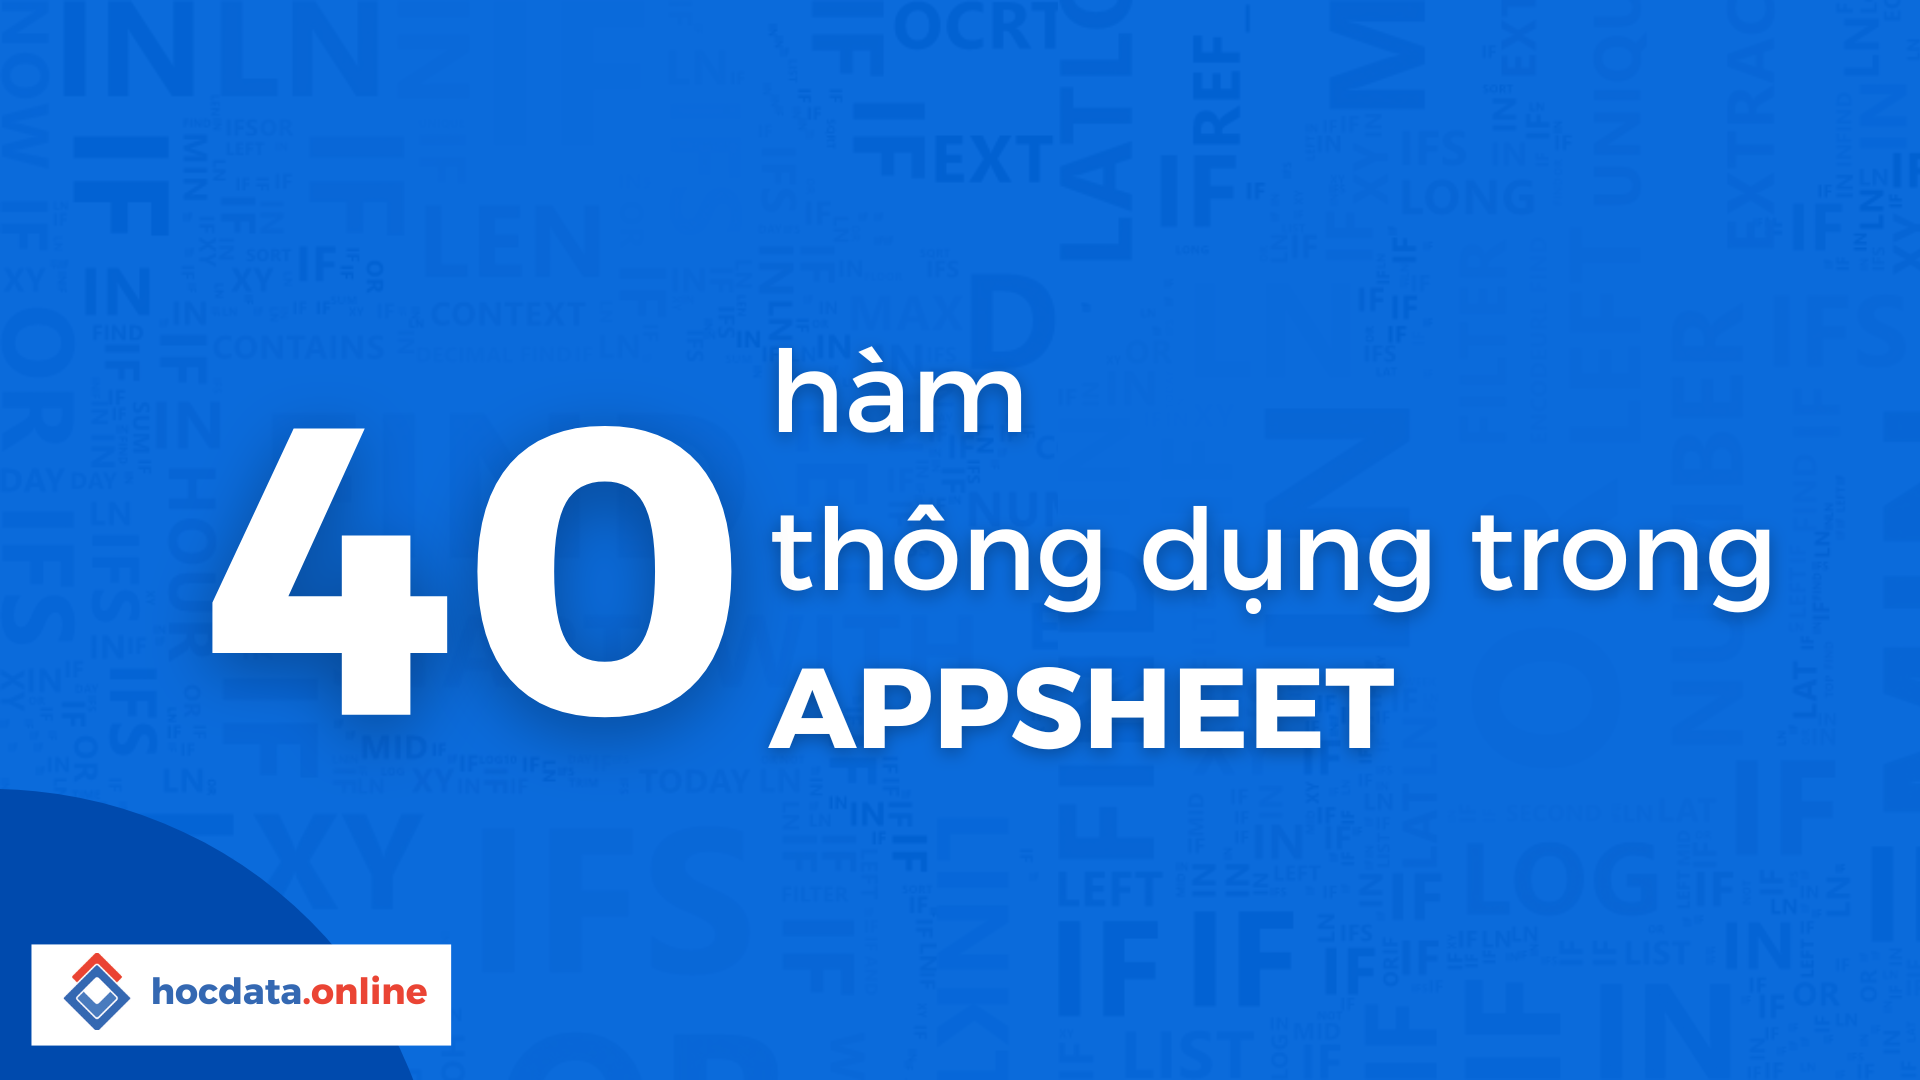 40 hàm thông dụng trong Appsheet